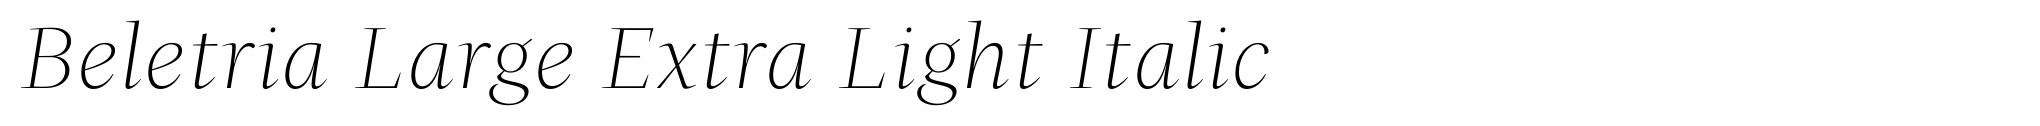 Beletria Large Extra Light Italic image